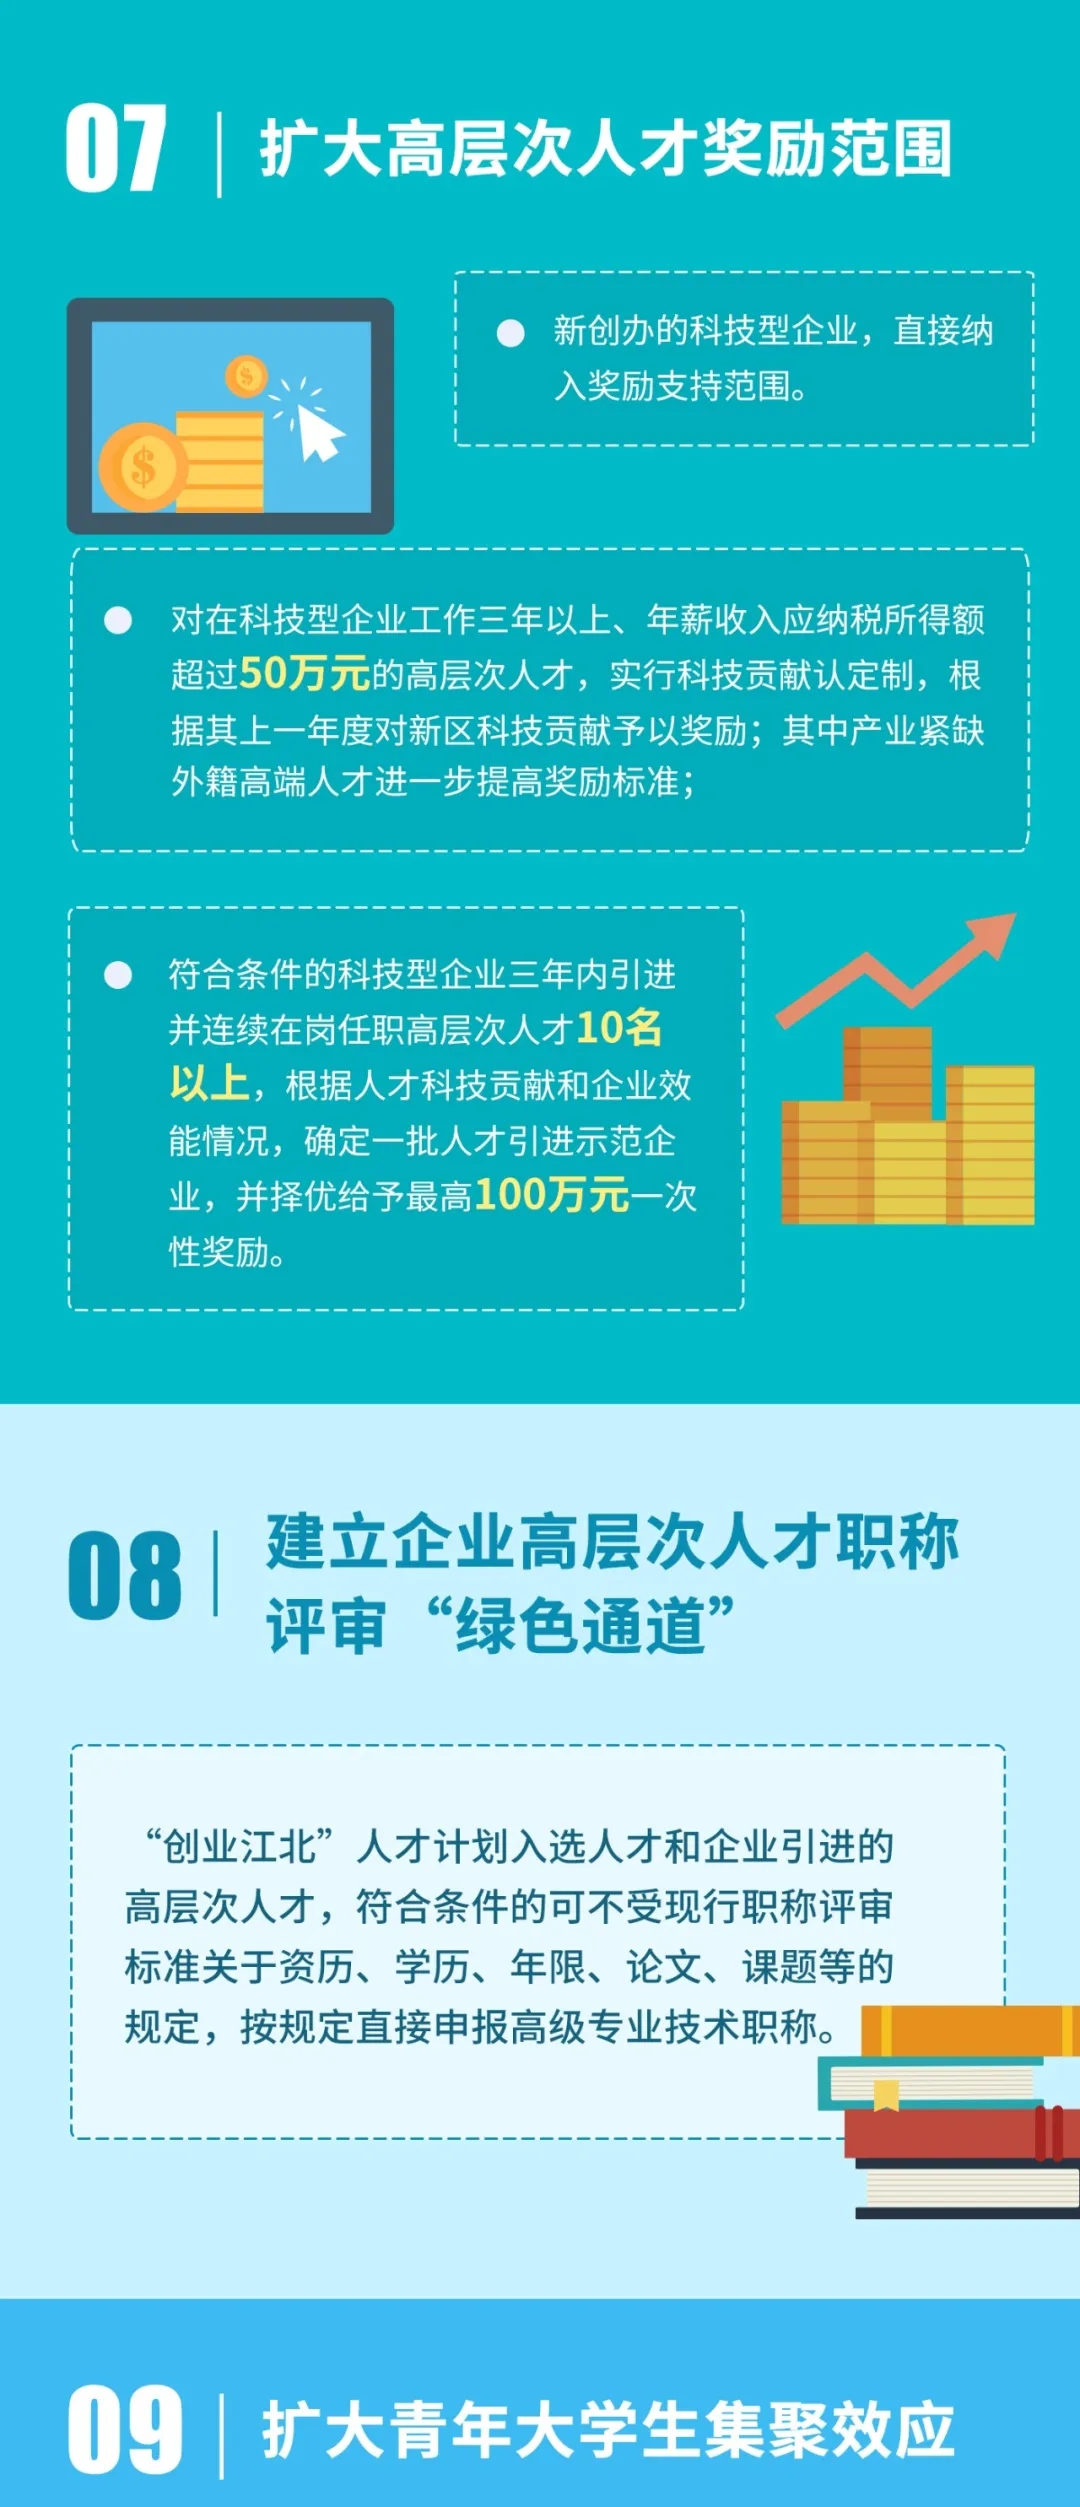 南京江北新区：博士后人才年龄放宽至40岁，支付住房补贴